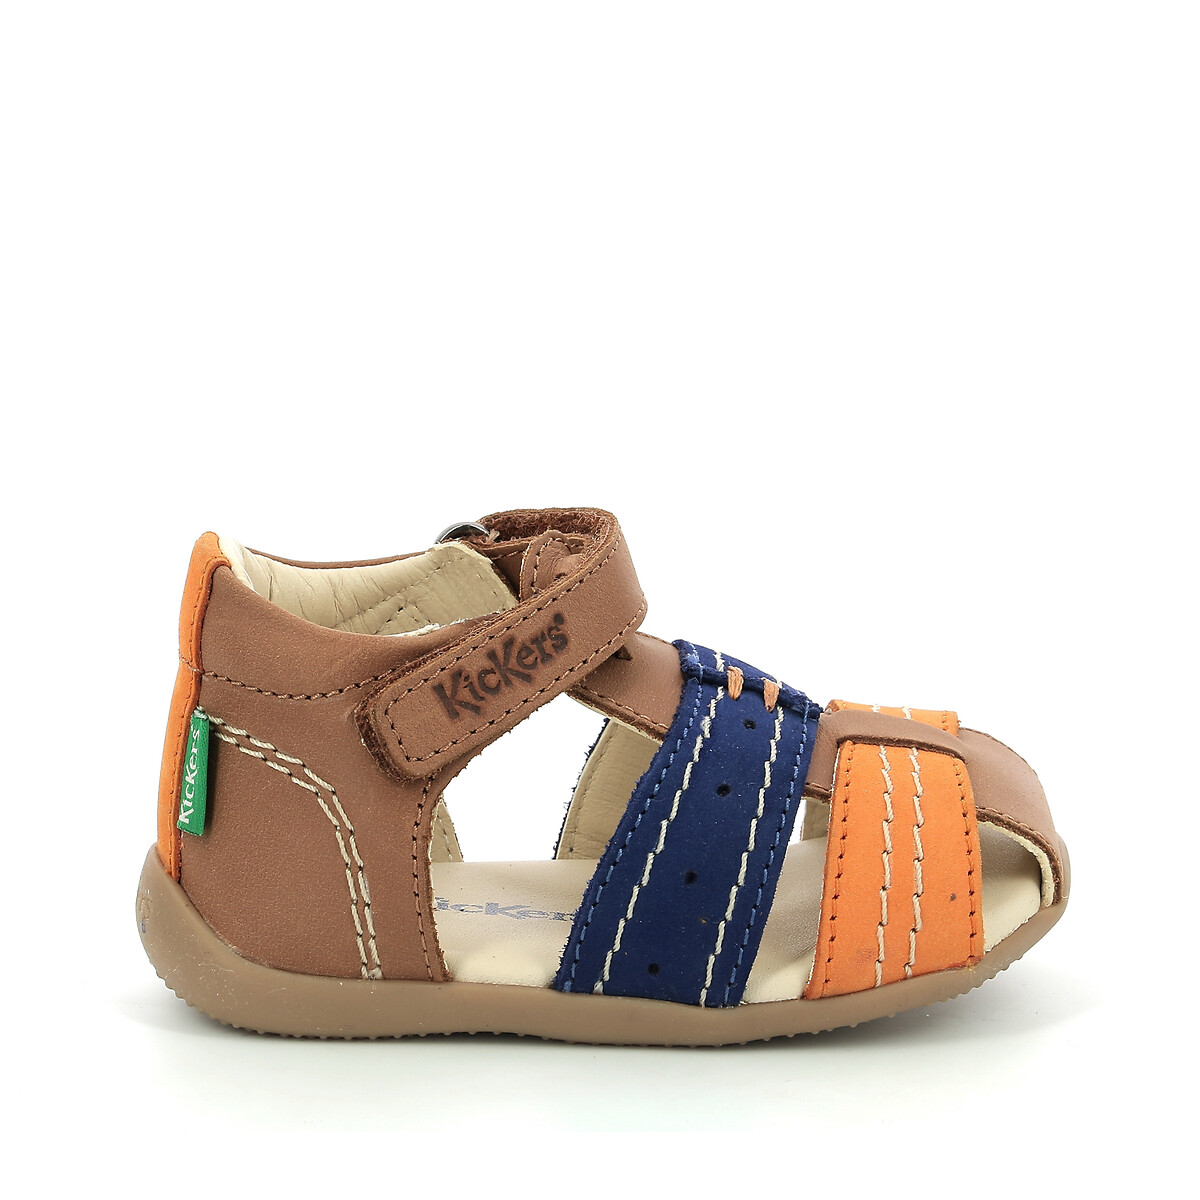 Voor u knecht College Gesloten sandalen in leer bigbazar-2 camel/oranje Kickers | La Redoute